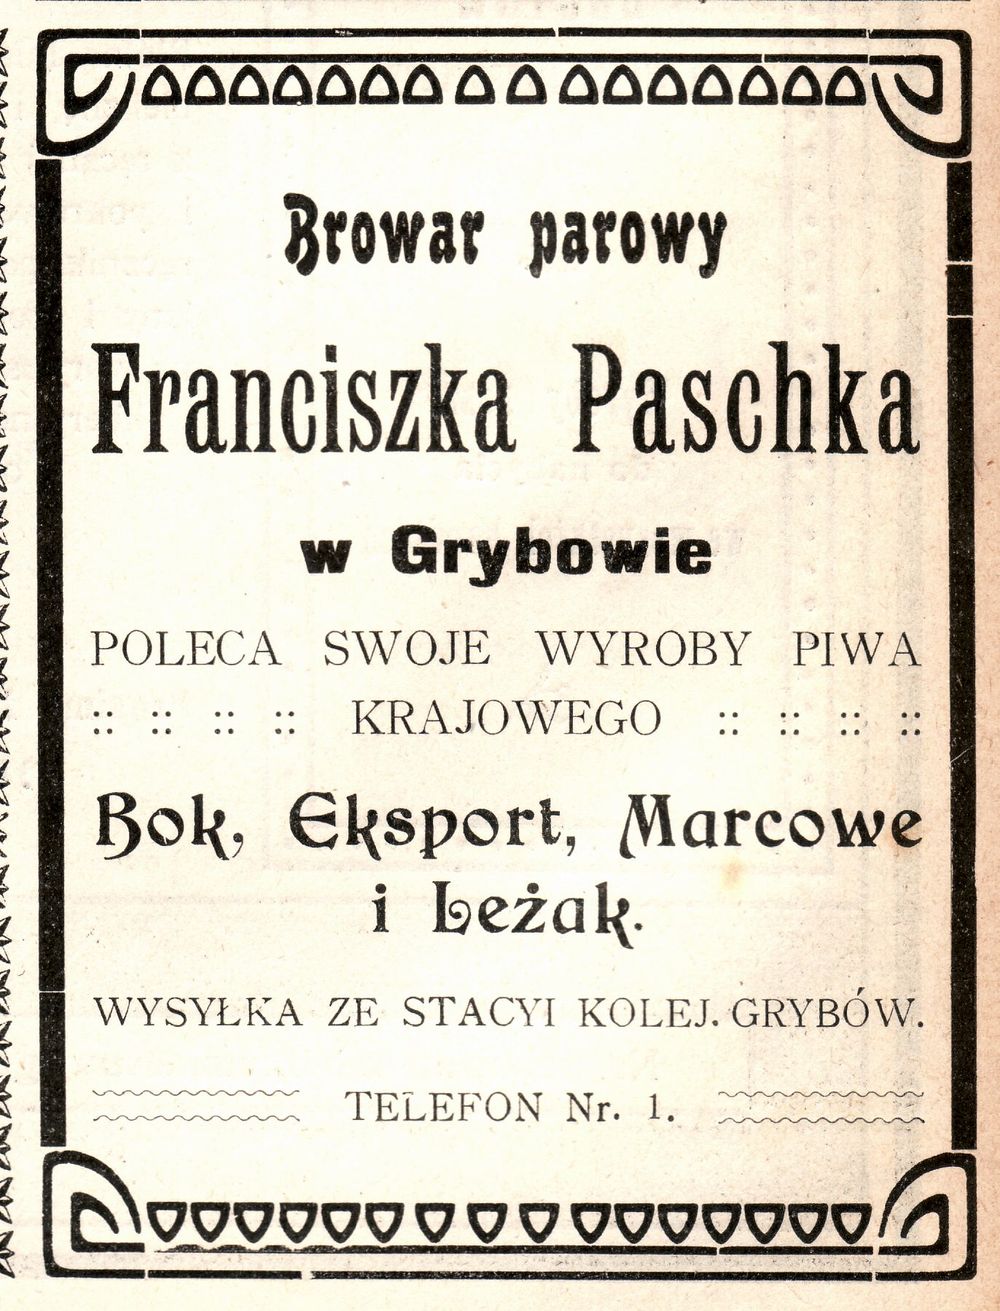 Reklama prasowa Browaru parowego Franciszka Paschka w Grybowie